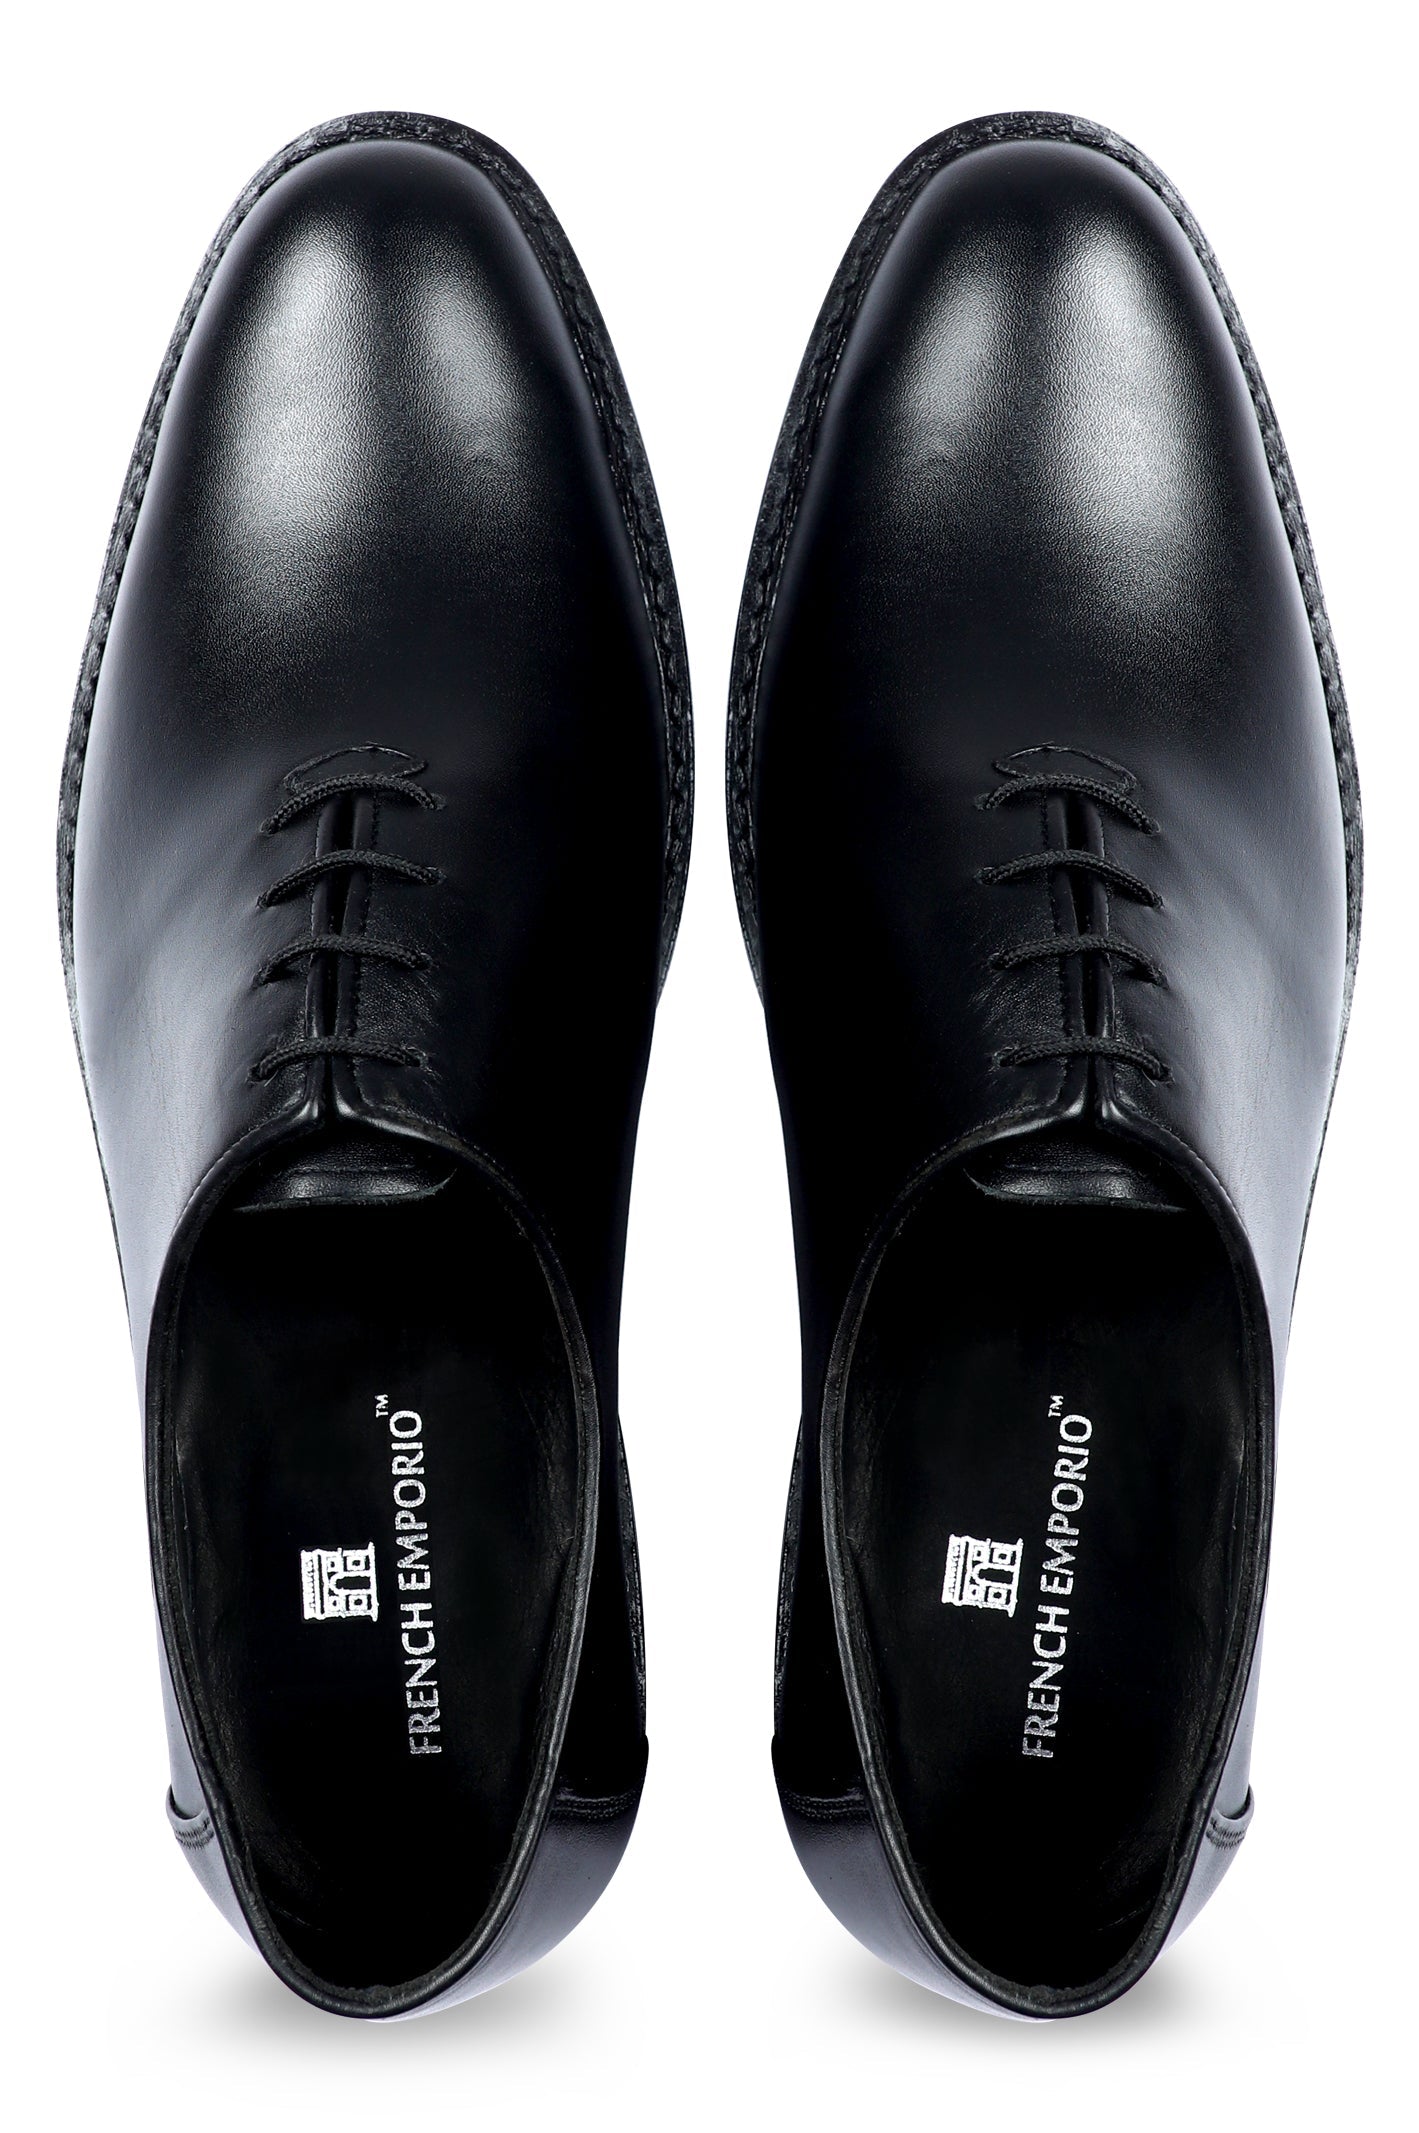 Formal Shoes For Men in Black SKU: SMF-0162-BLACK - Diners